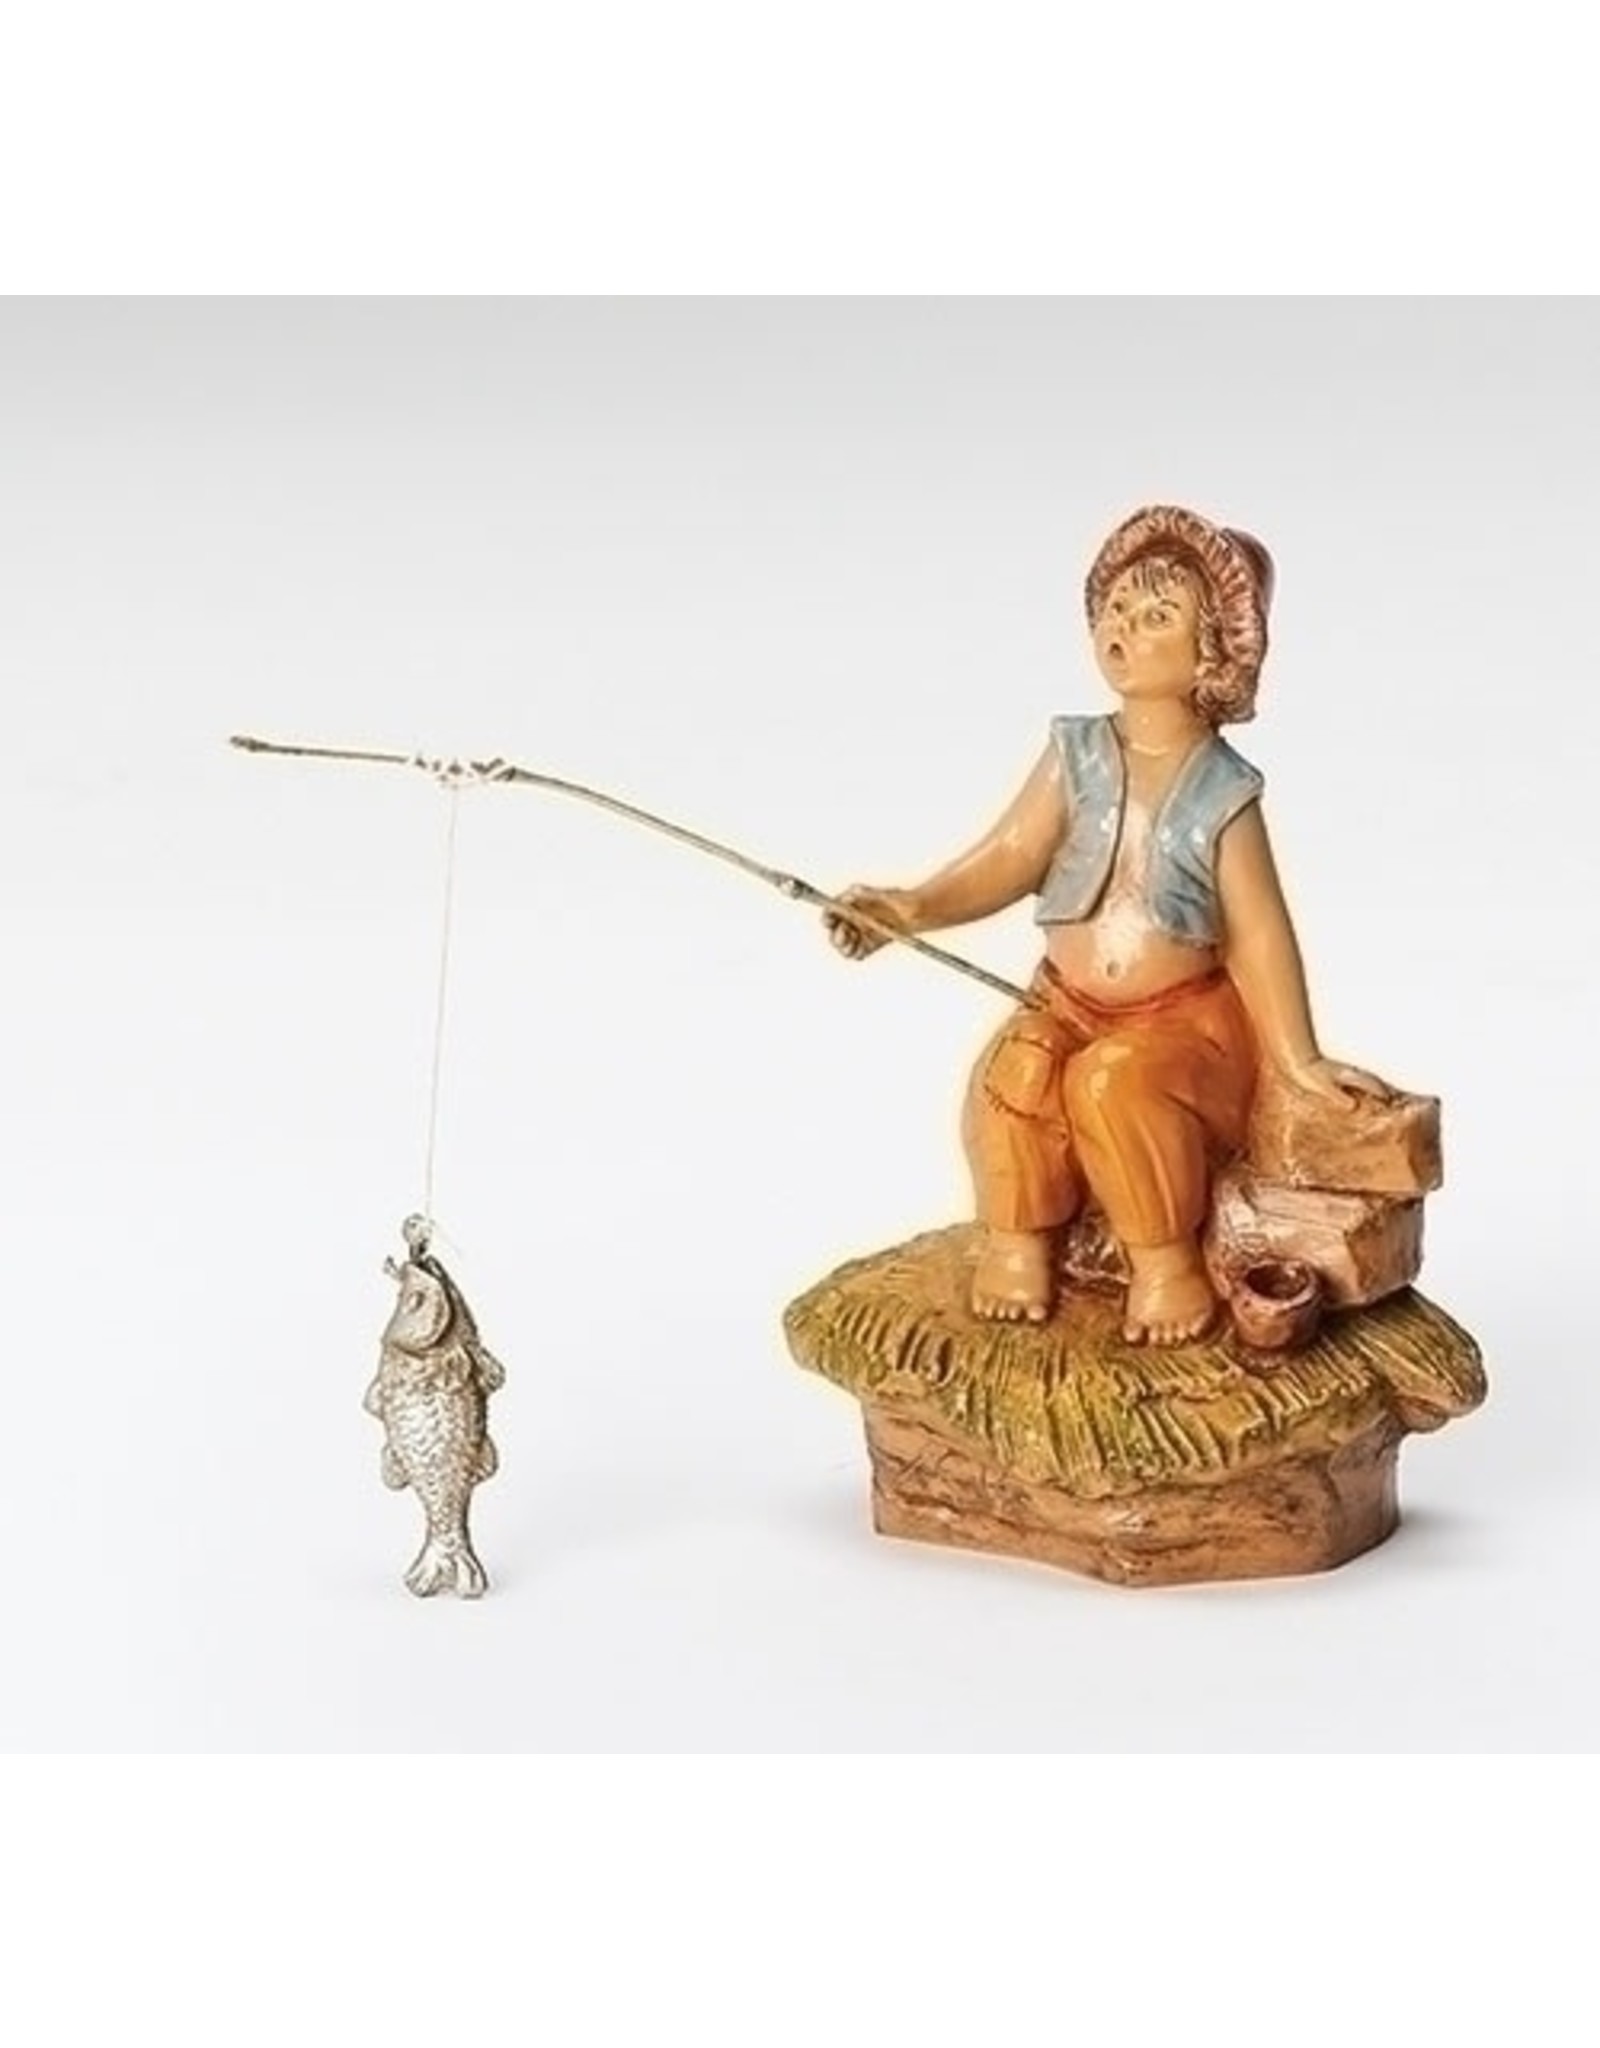 Roman Fontanini - Jada, Boy Fishing (5" Scale)